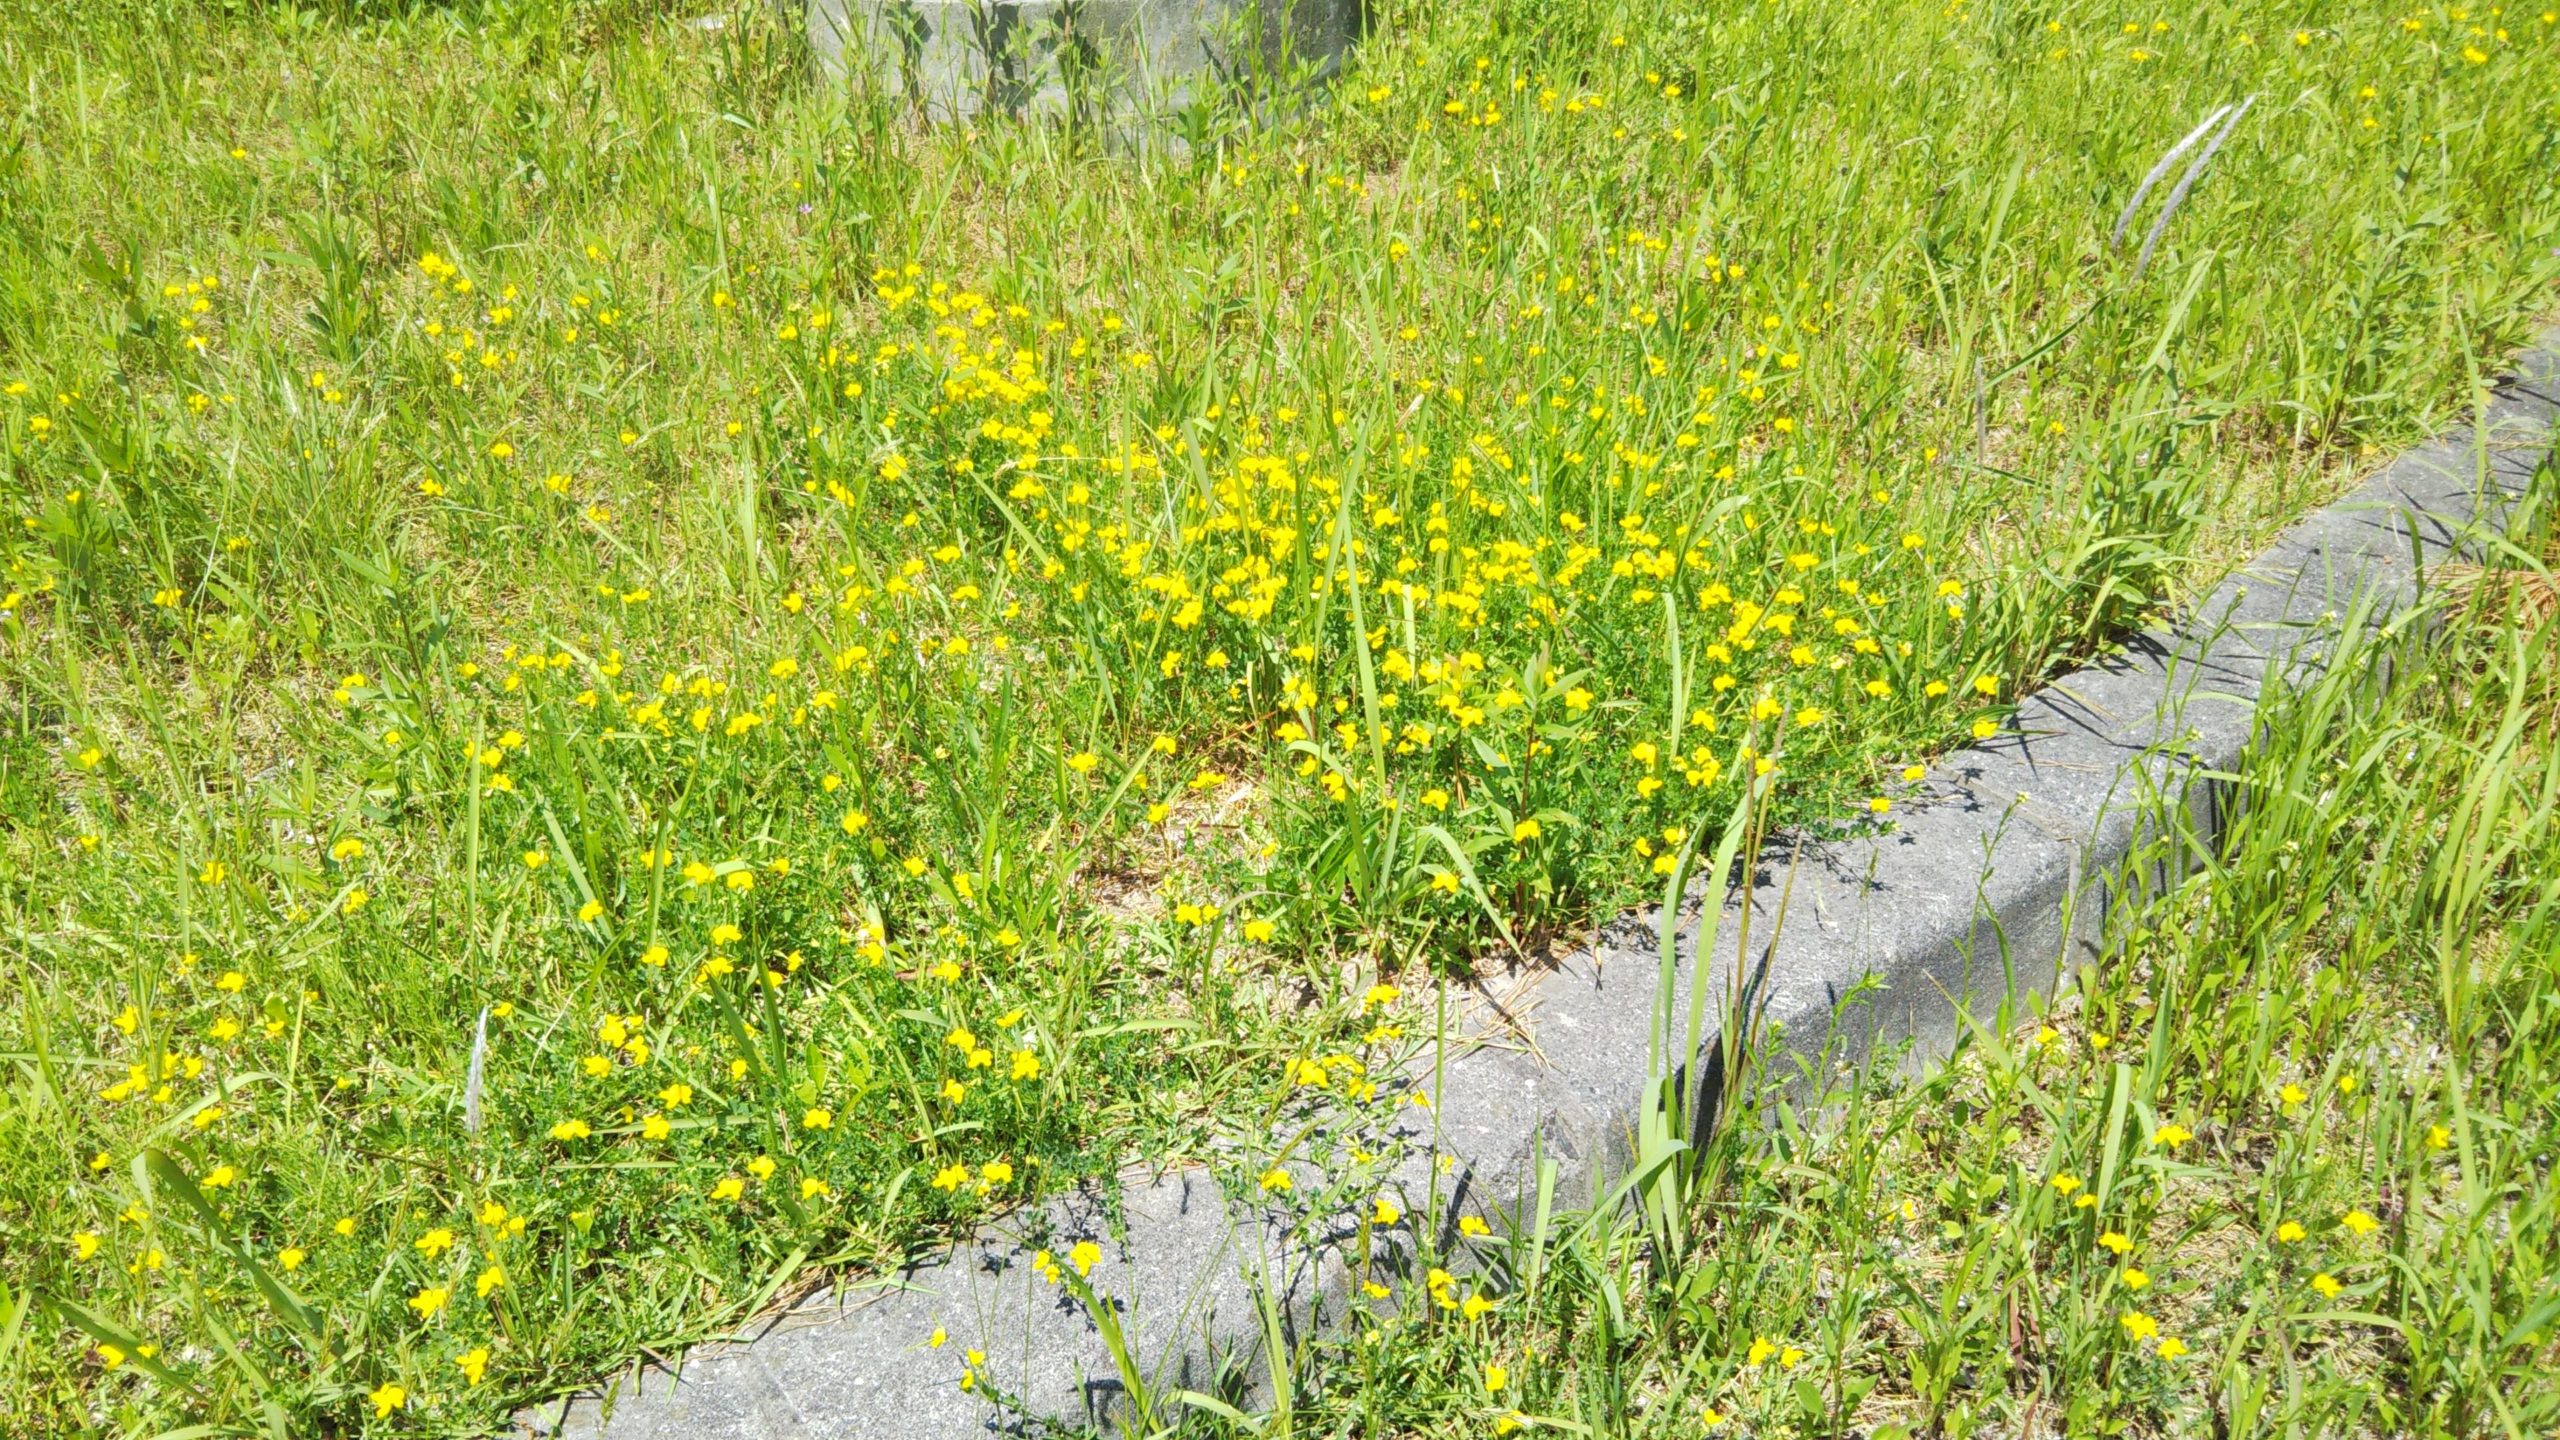 近所の道路脇に黄色い花の群落が